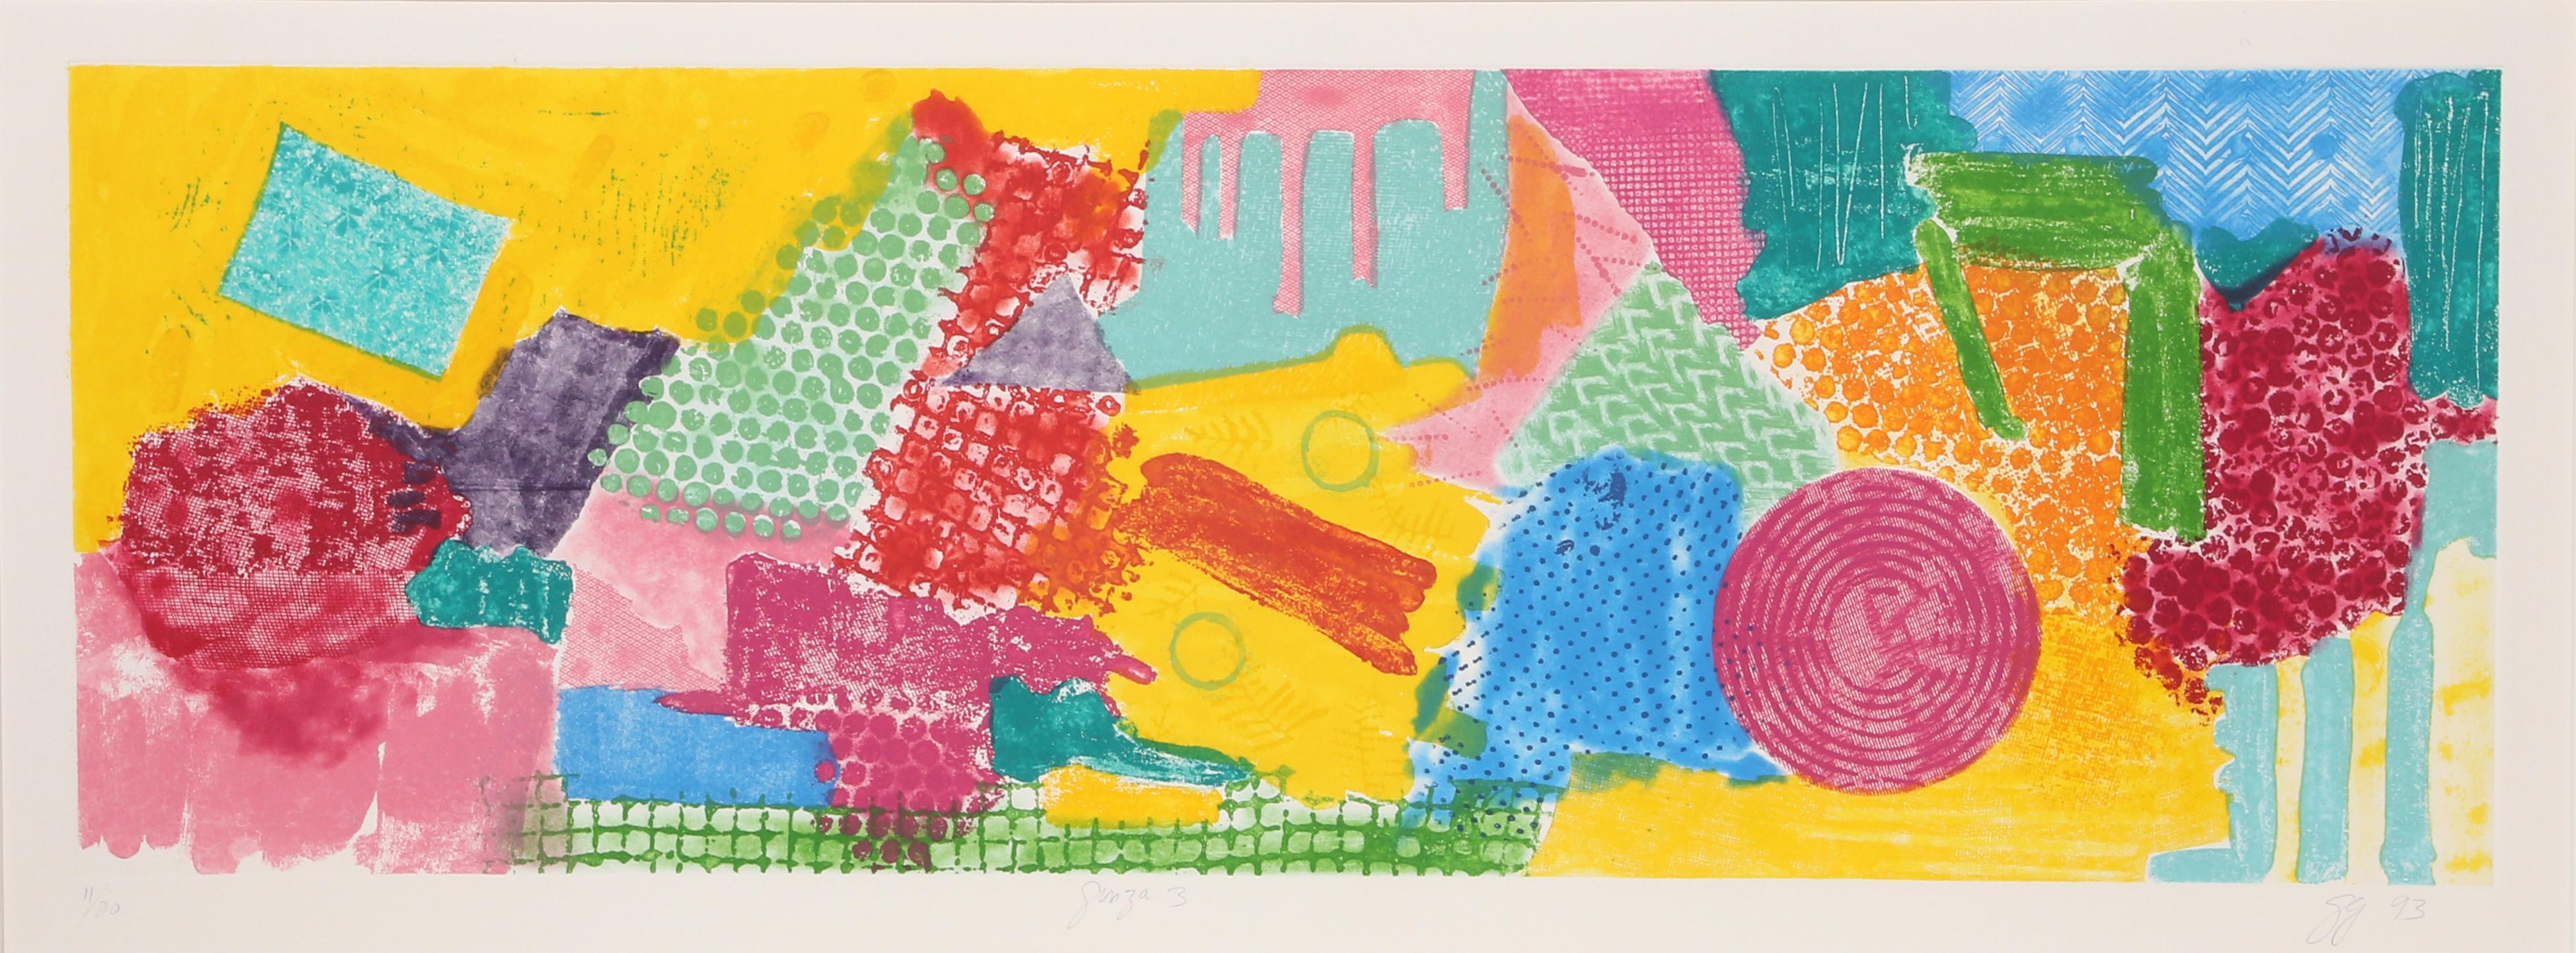 Artistics : Gloria Garfinkle, Américaine (1929 -  )
Titre : Ginza 3
Année : 1993
Moyen : Eau-forte et aquatinte, signée et numérotée au crayon
Edition : 11/20
Taille de l'image : 12 x 35 pouces
Taille : 20 x 44 in. (50.8 x 111.76 cm) (avec